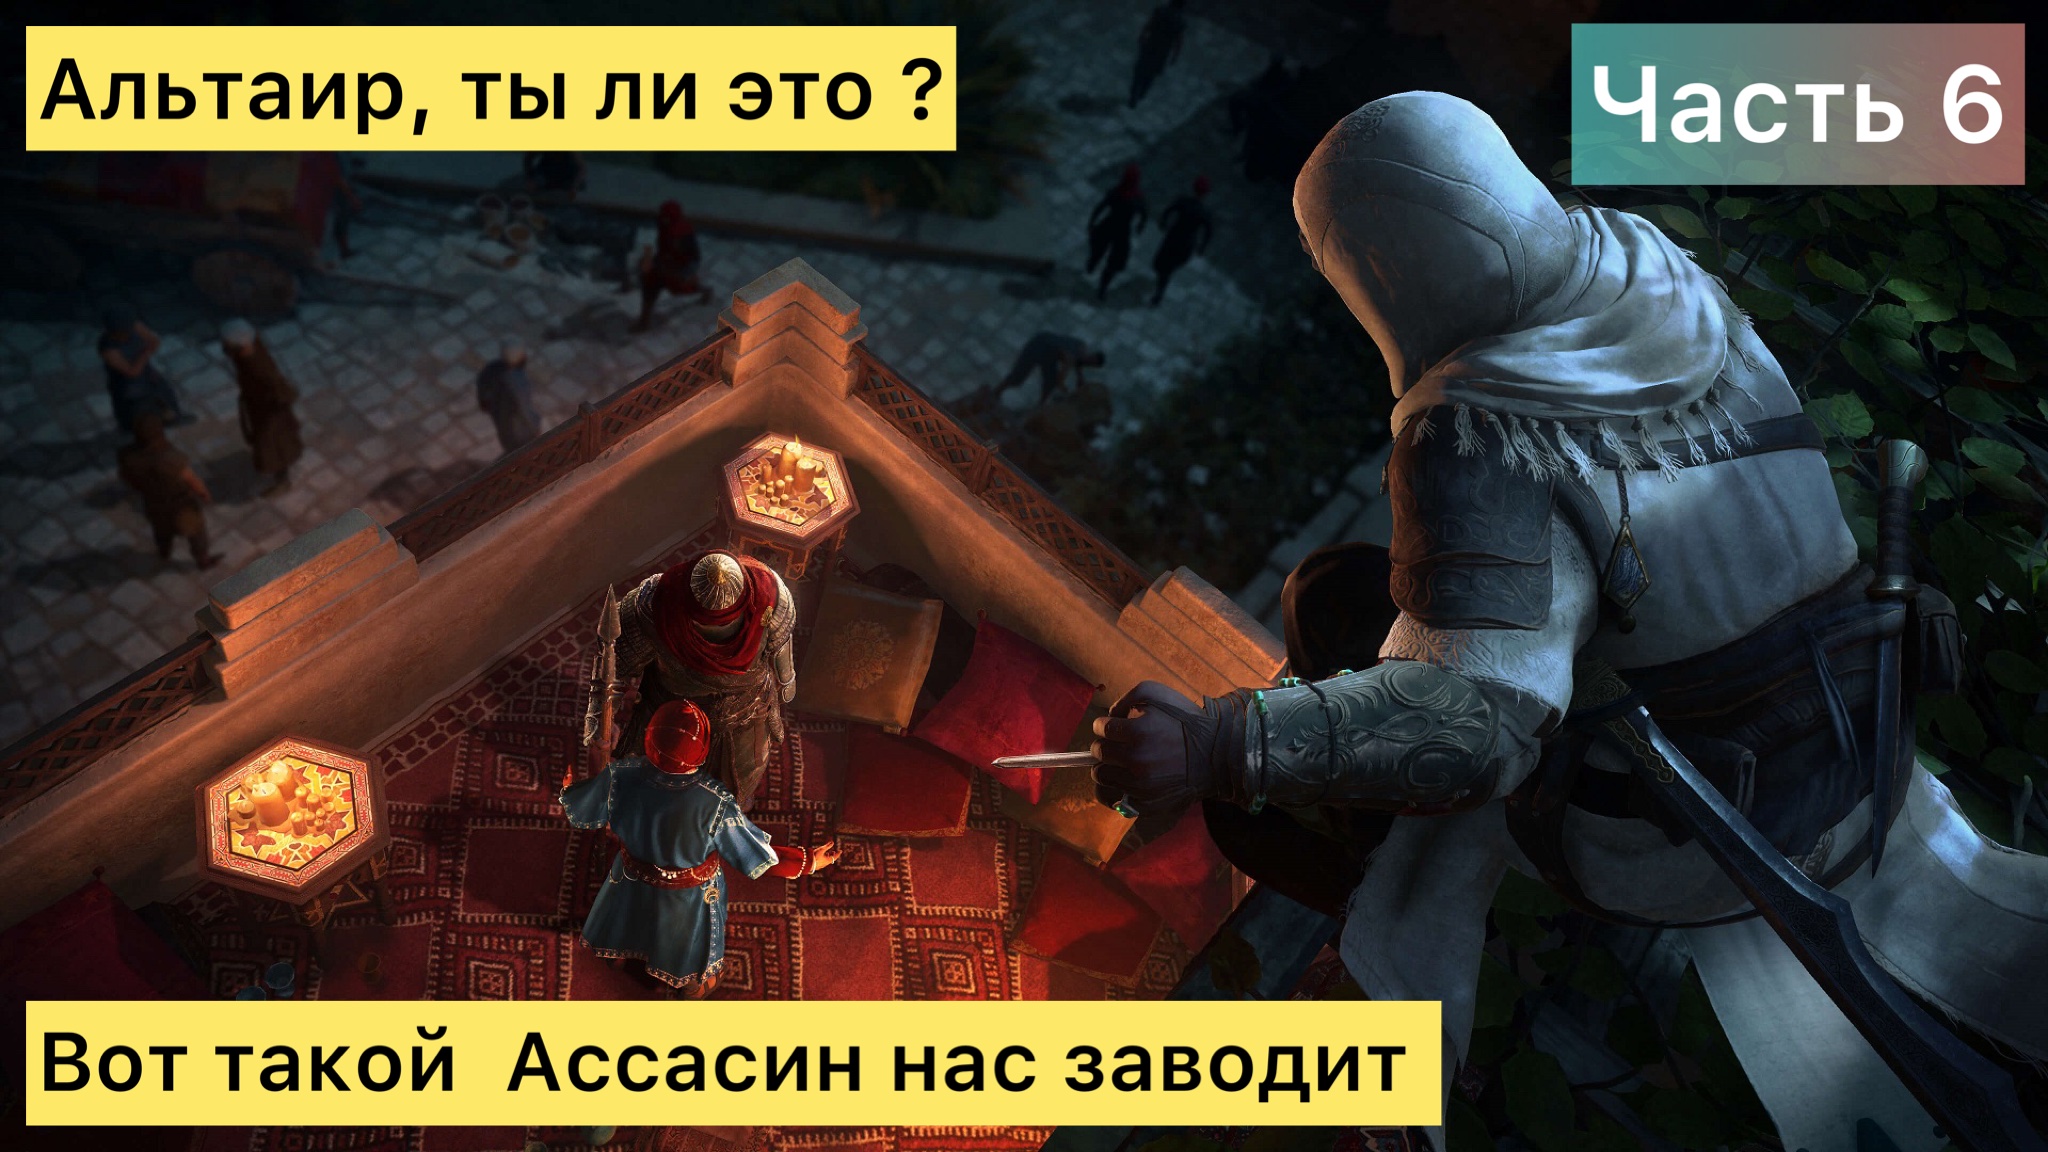 Assassin’s Creed Mirage "Восточный мотив" - 6 часть